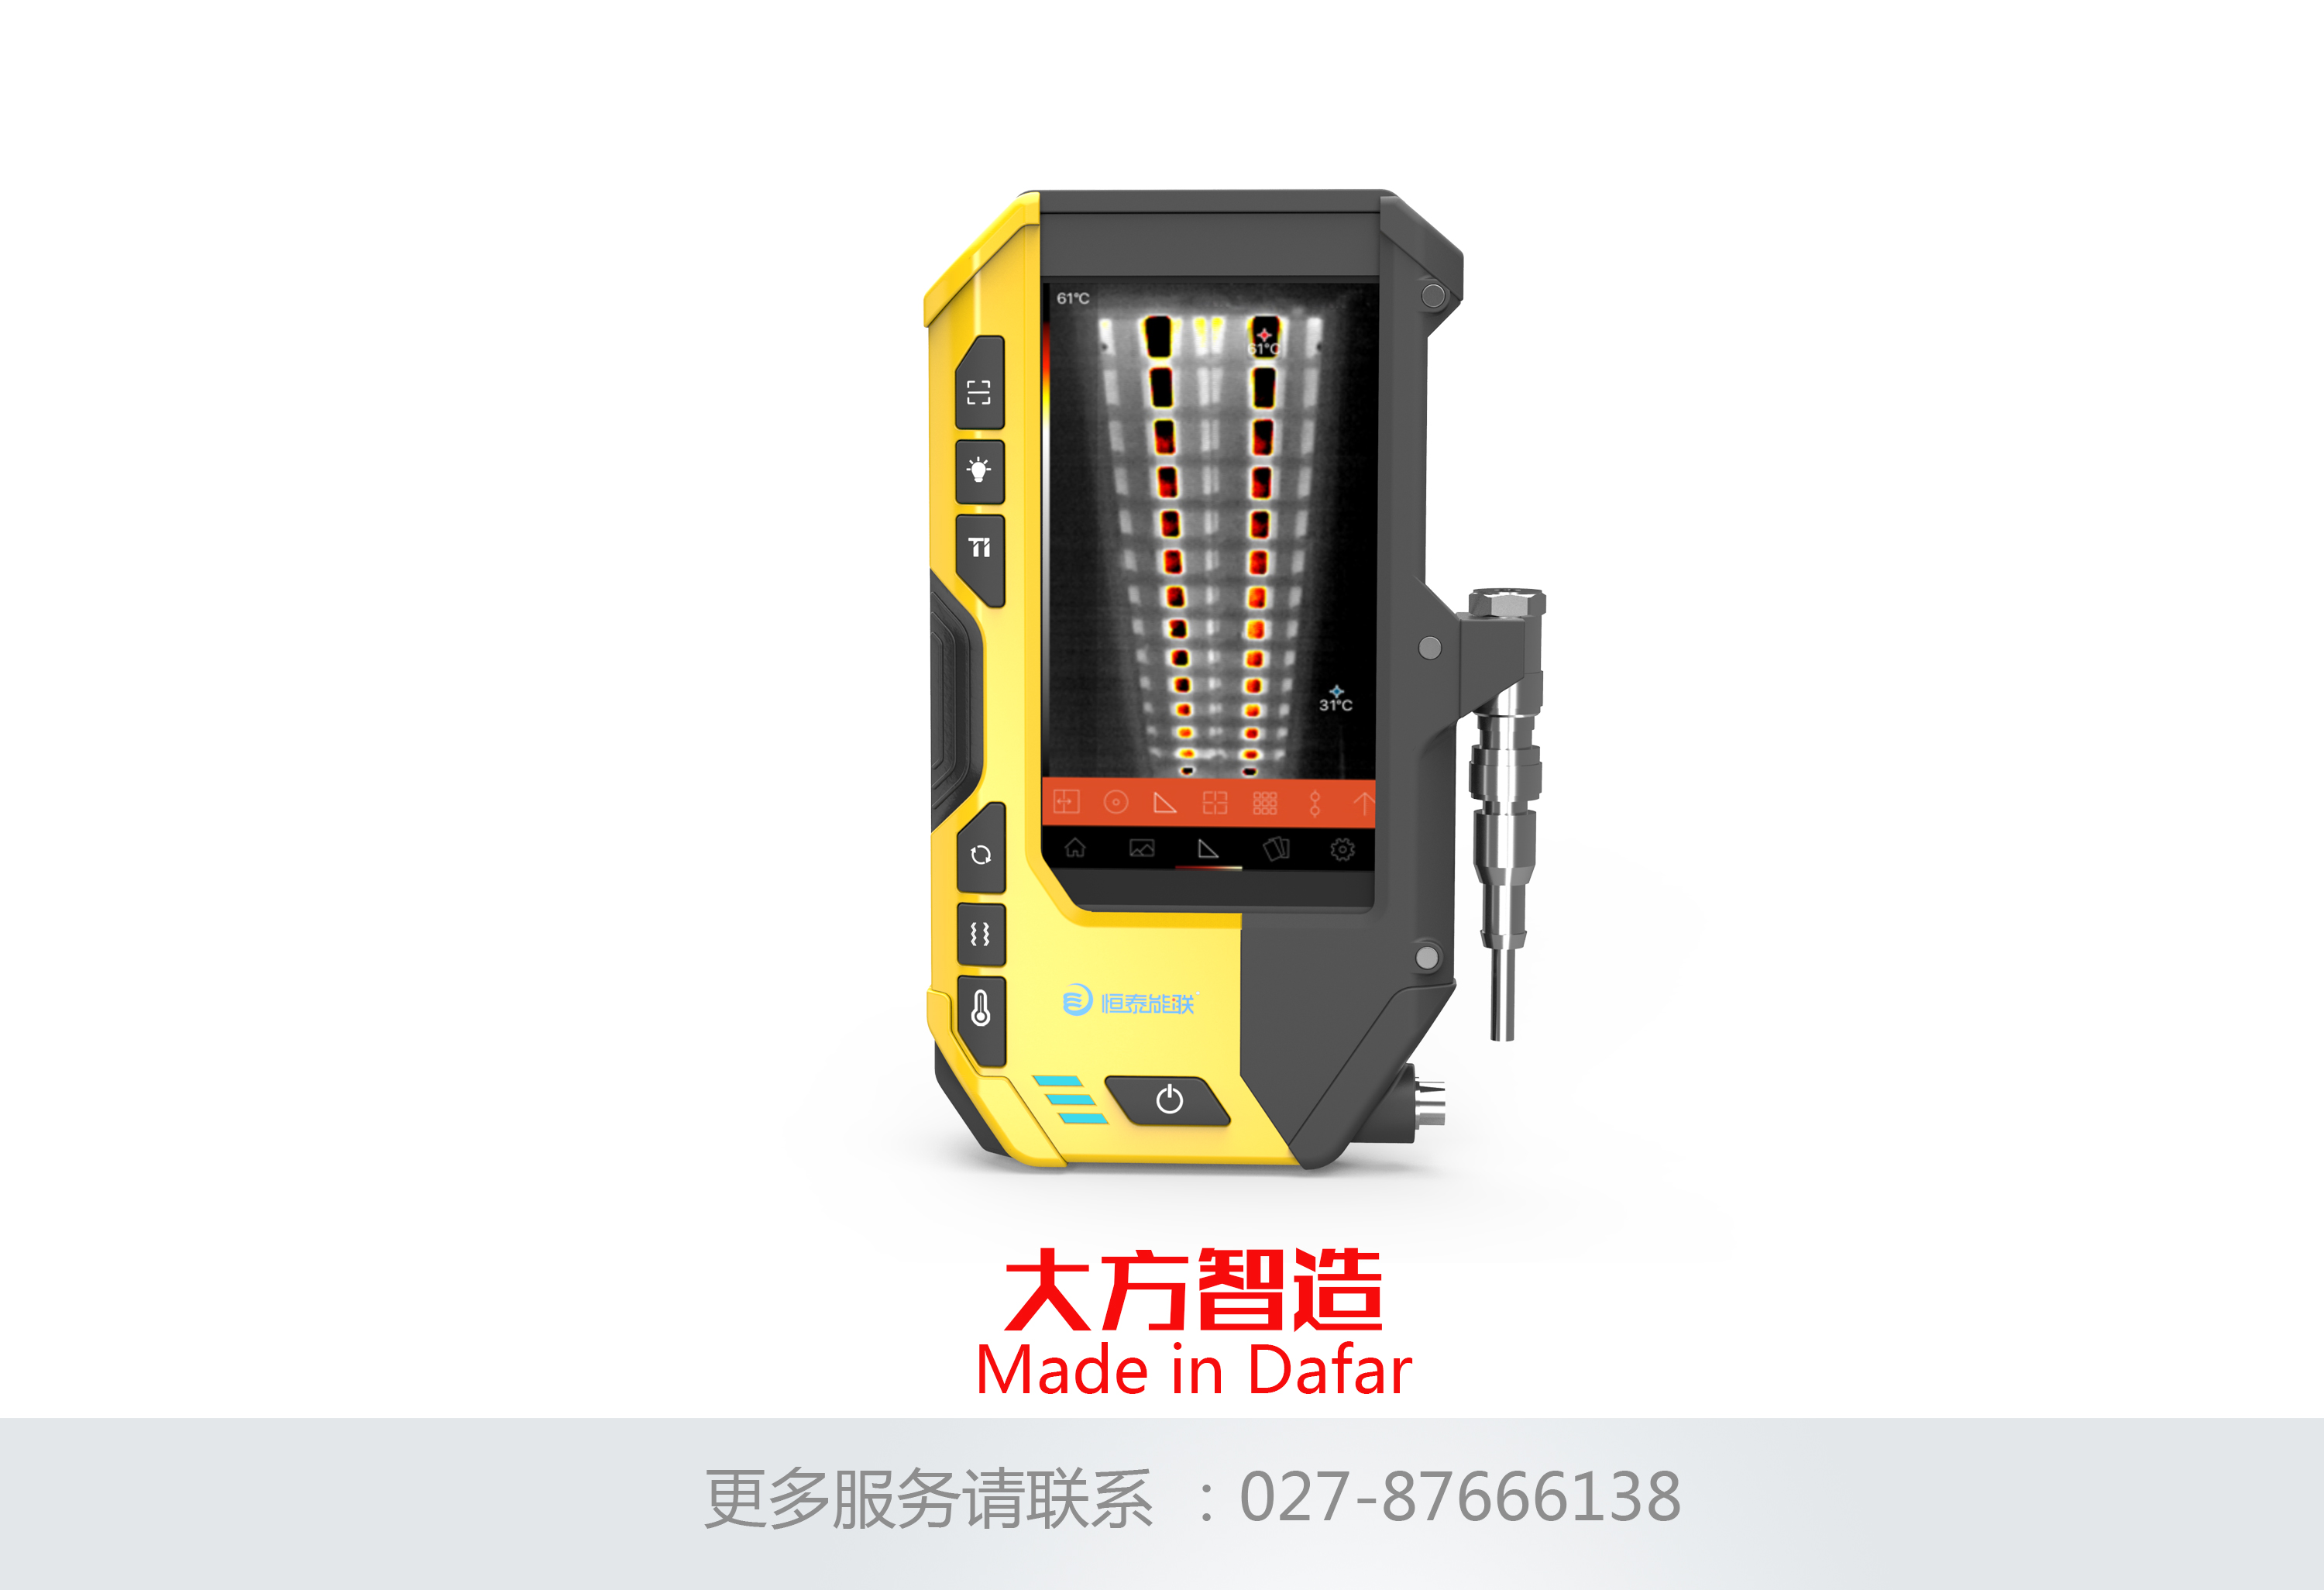 手持多功能检测设备_武汉大方工业设计有限公司